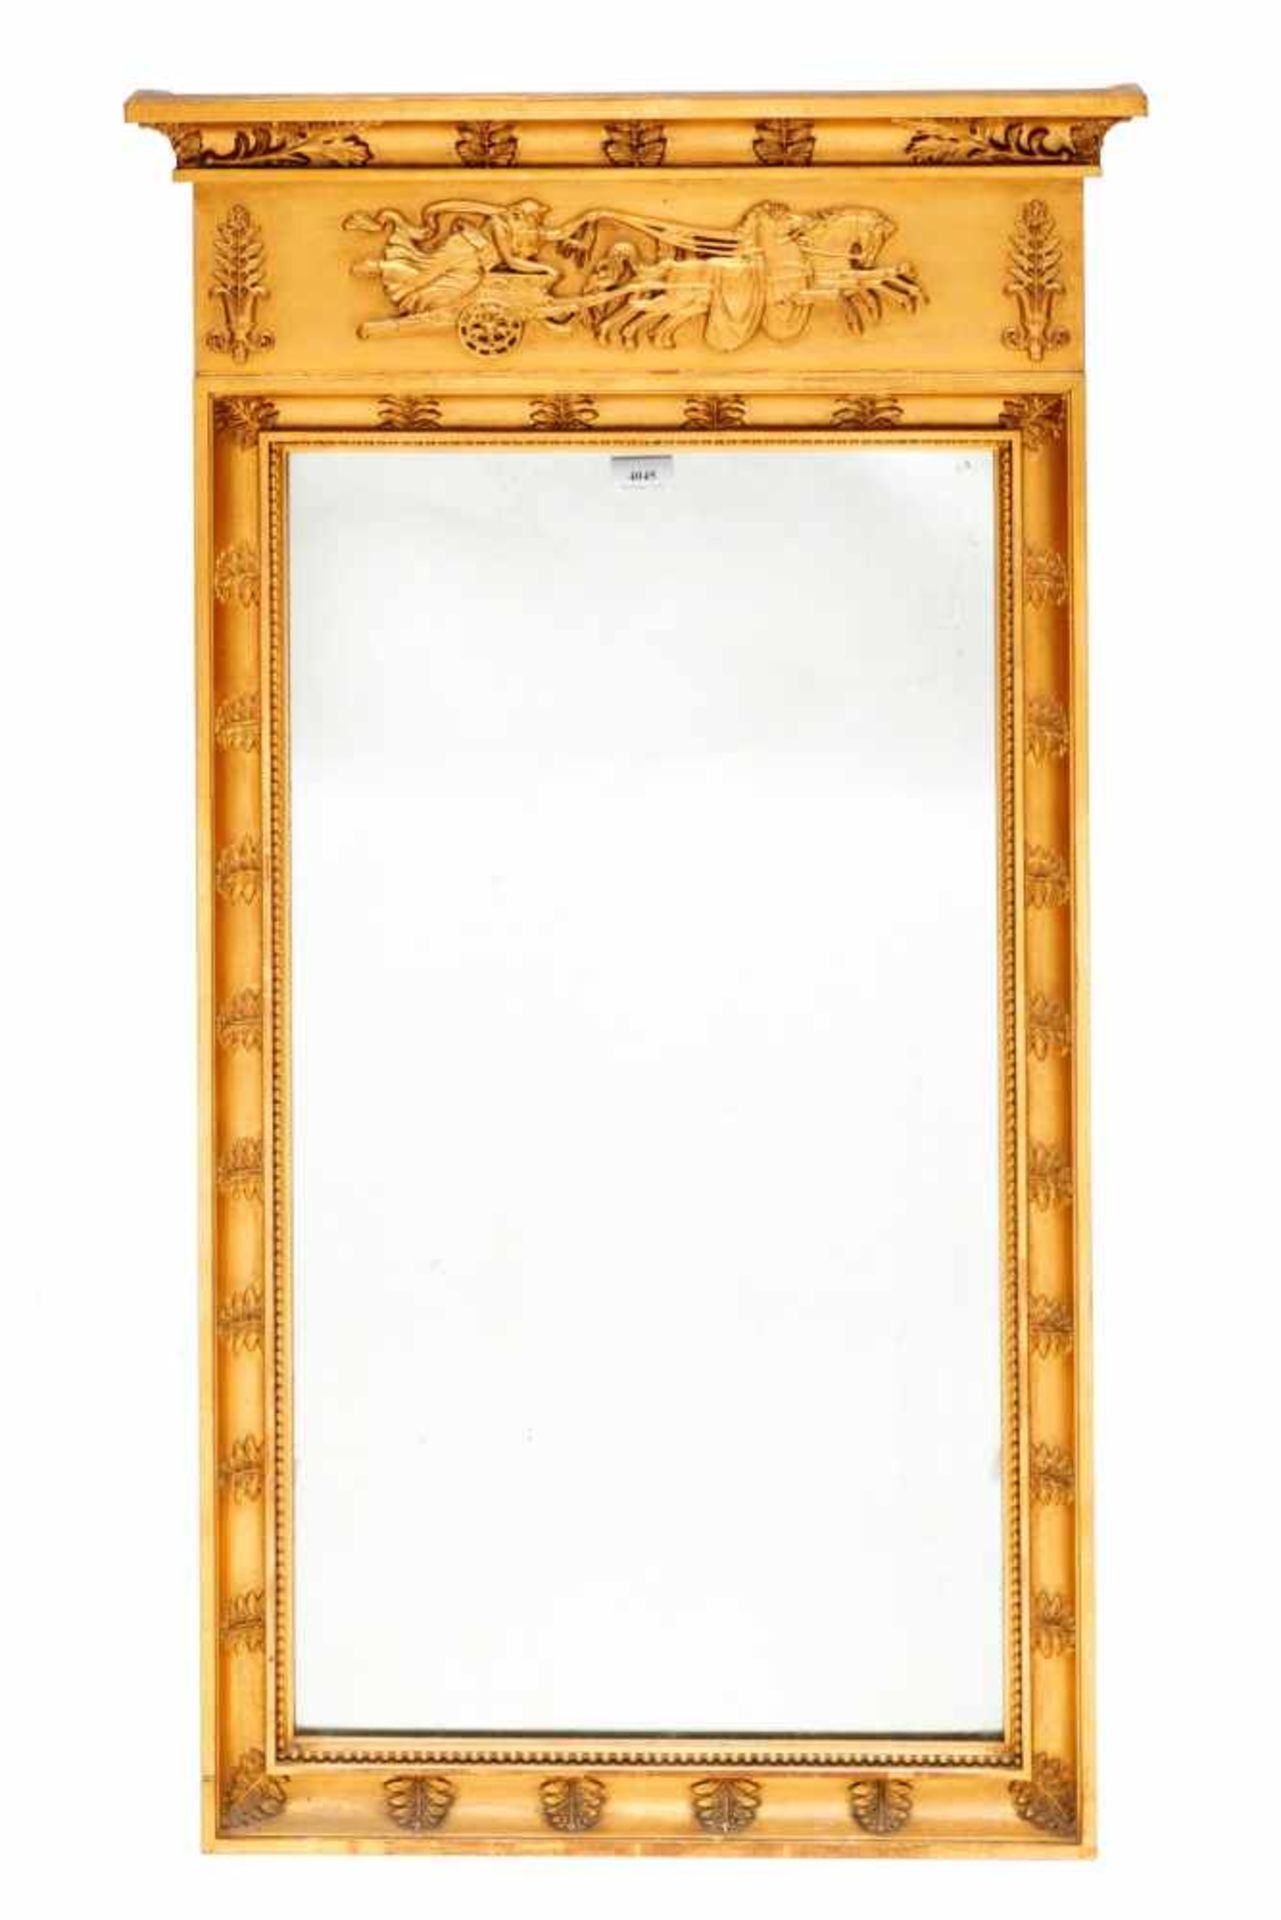 Rechthoekige spiegel in verguld houten lijst in Empire-stijl, 19e eeuw,met in de rechte kap een